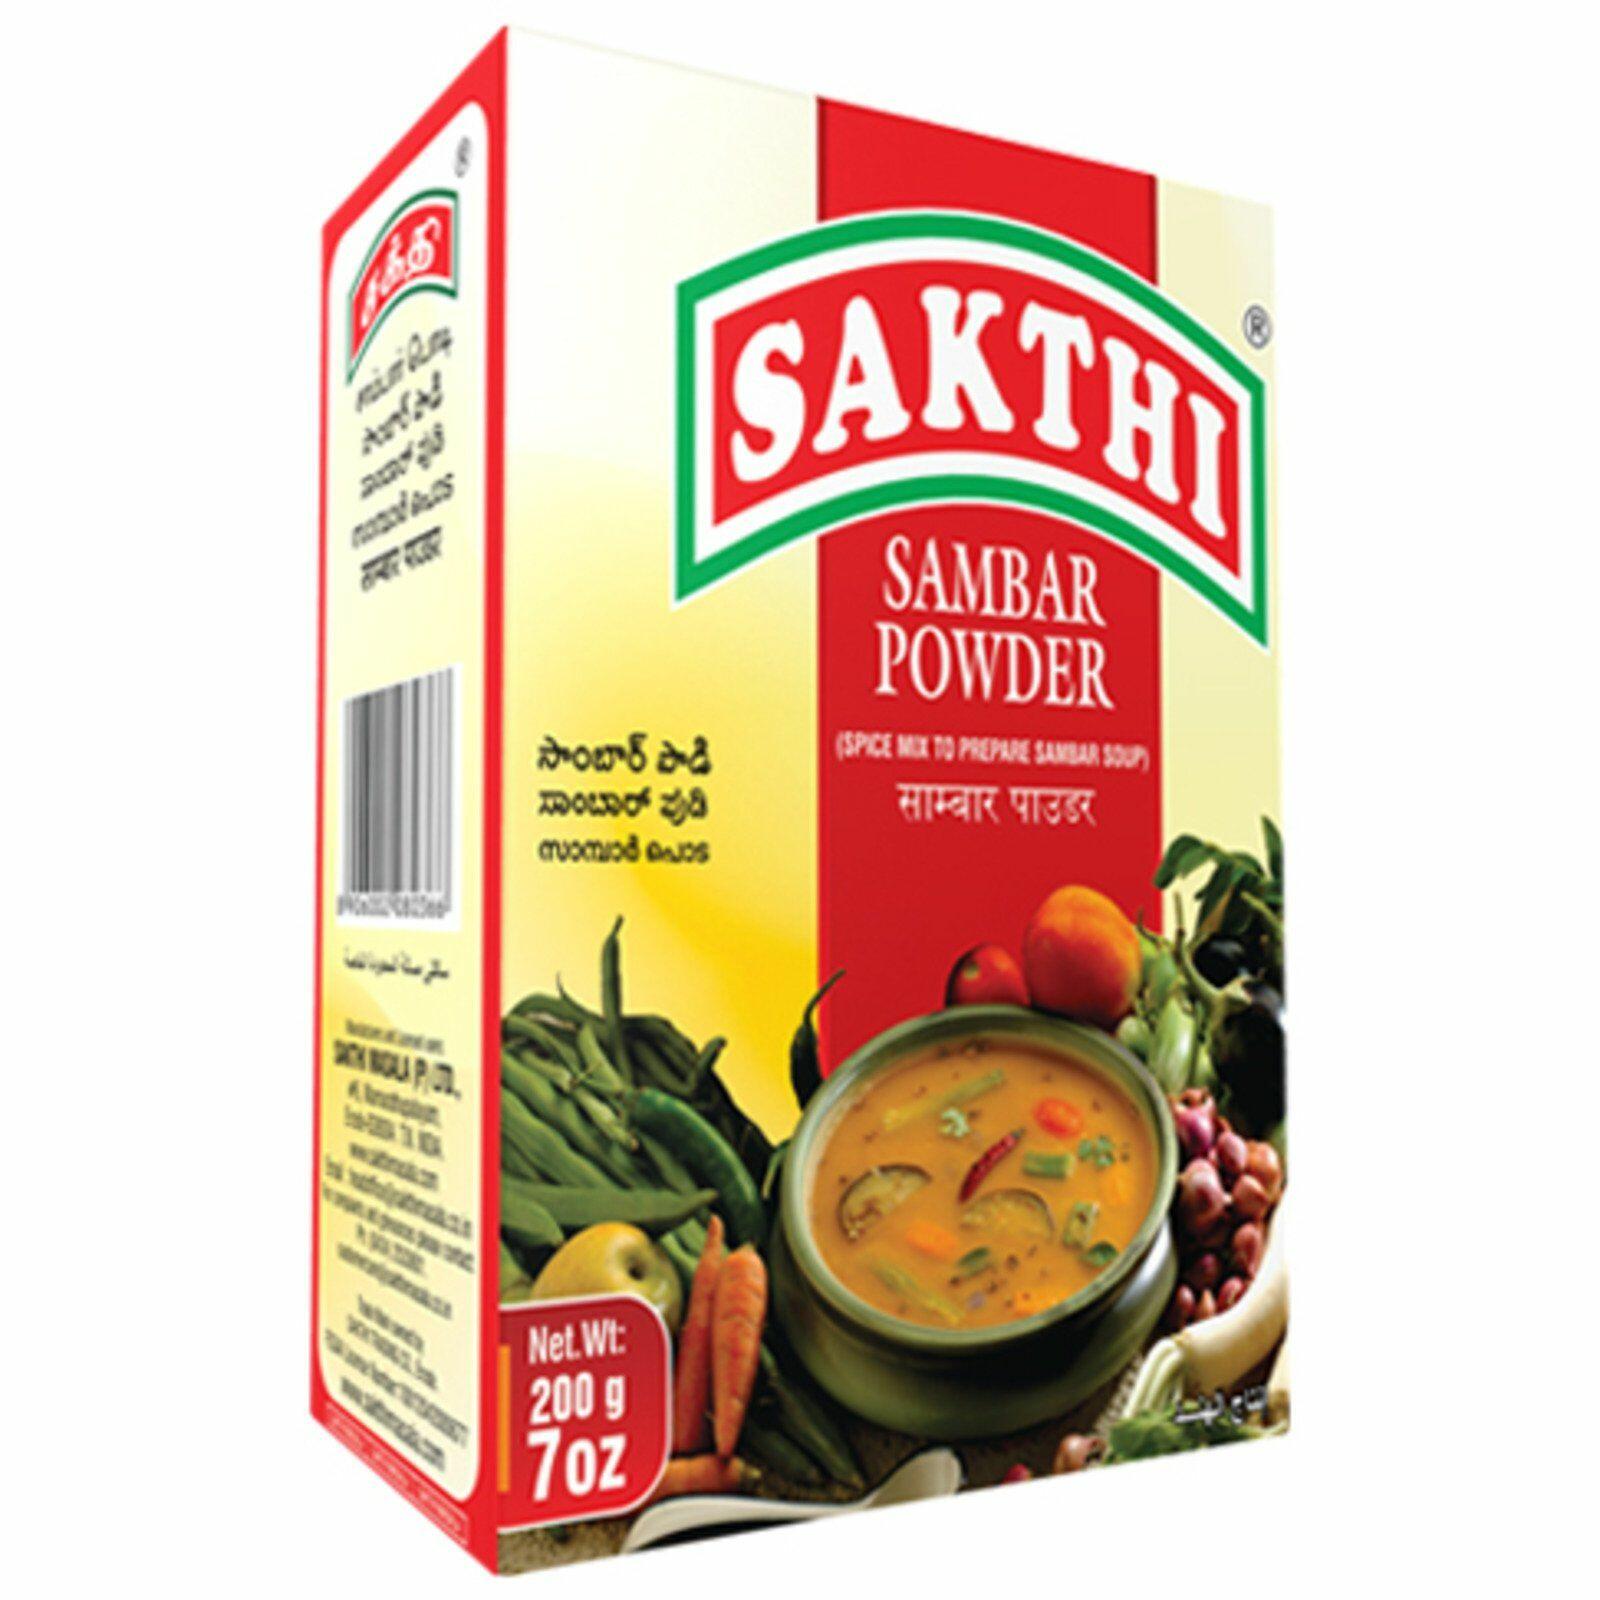 Sakthi Sambar Powder 200g